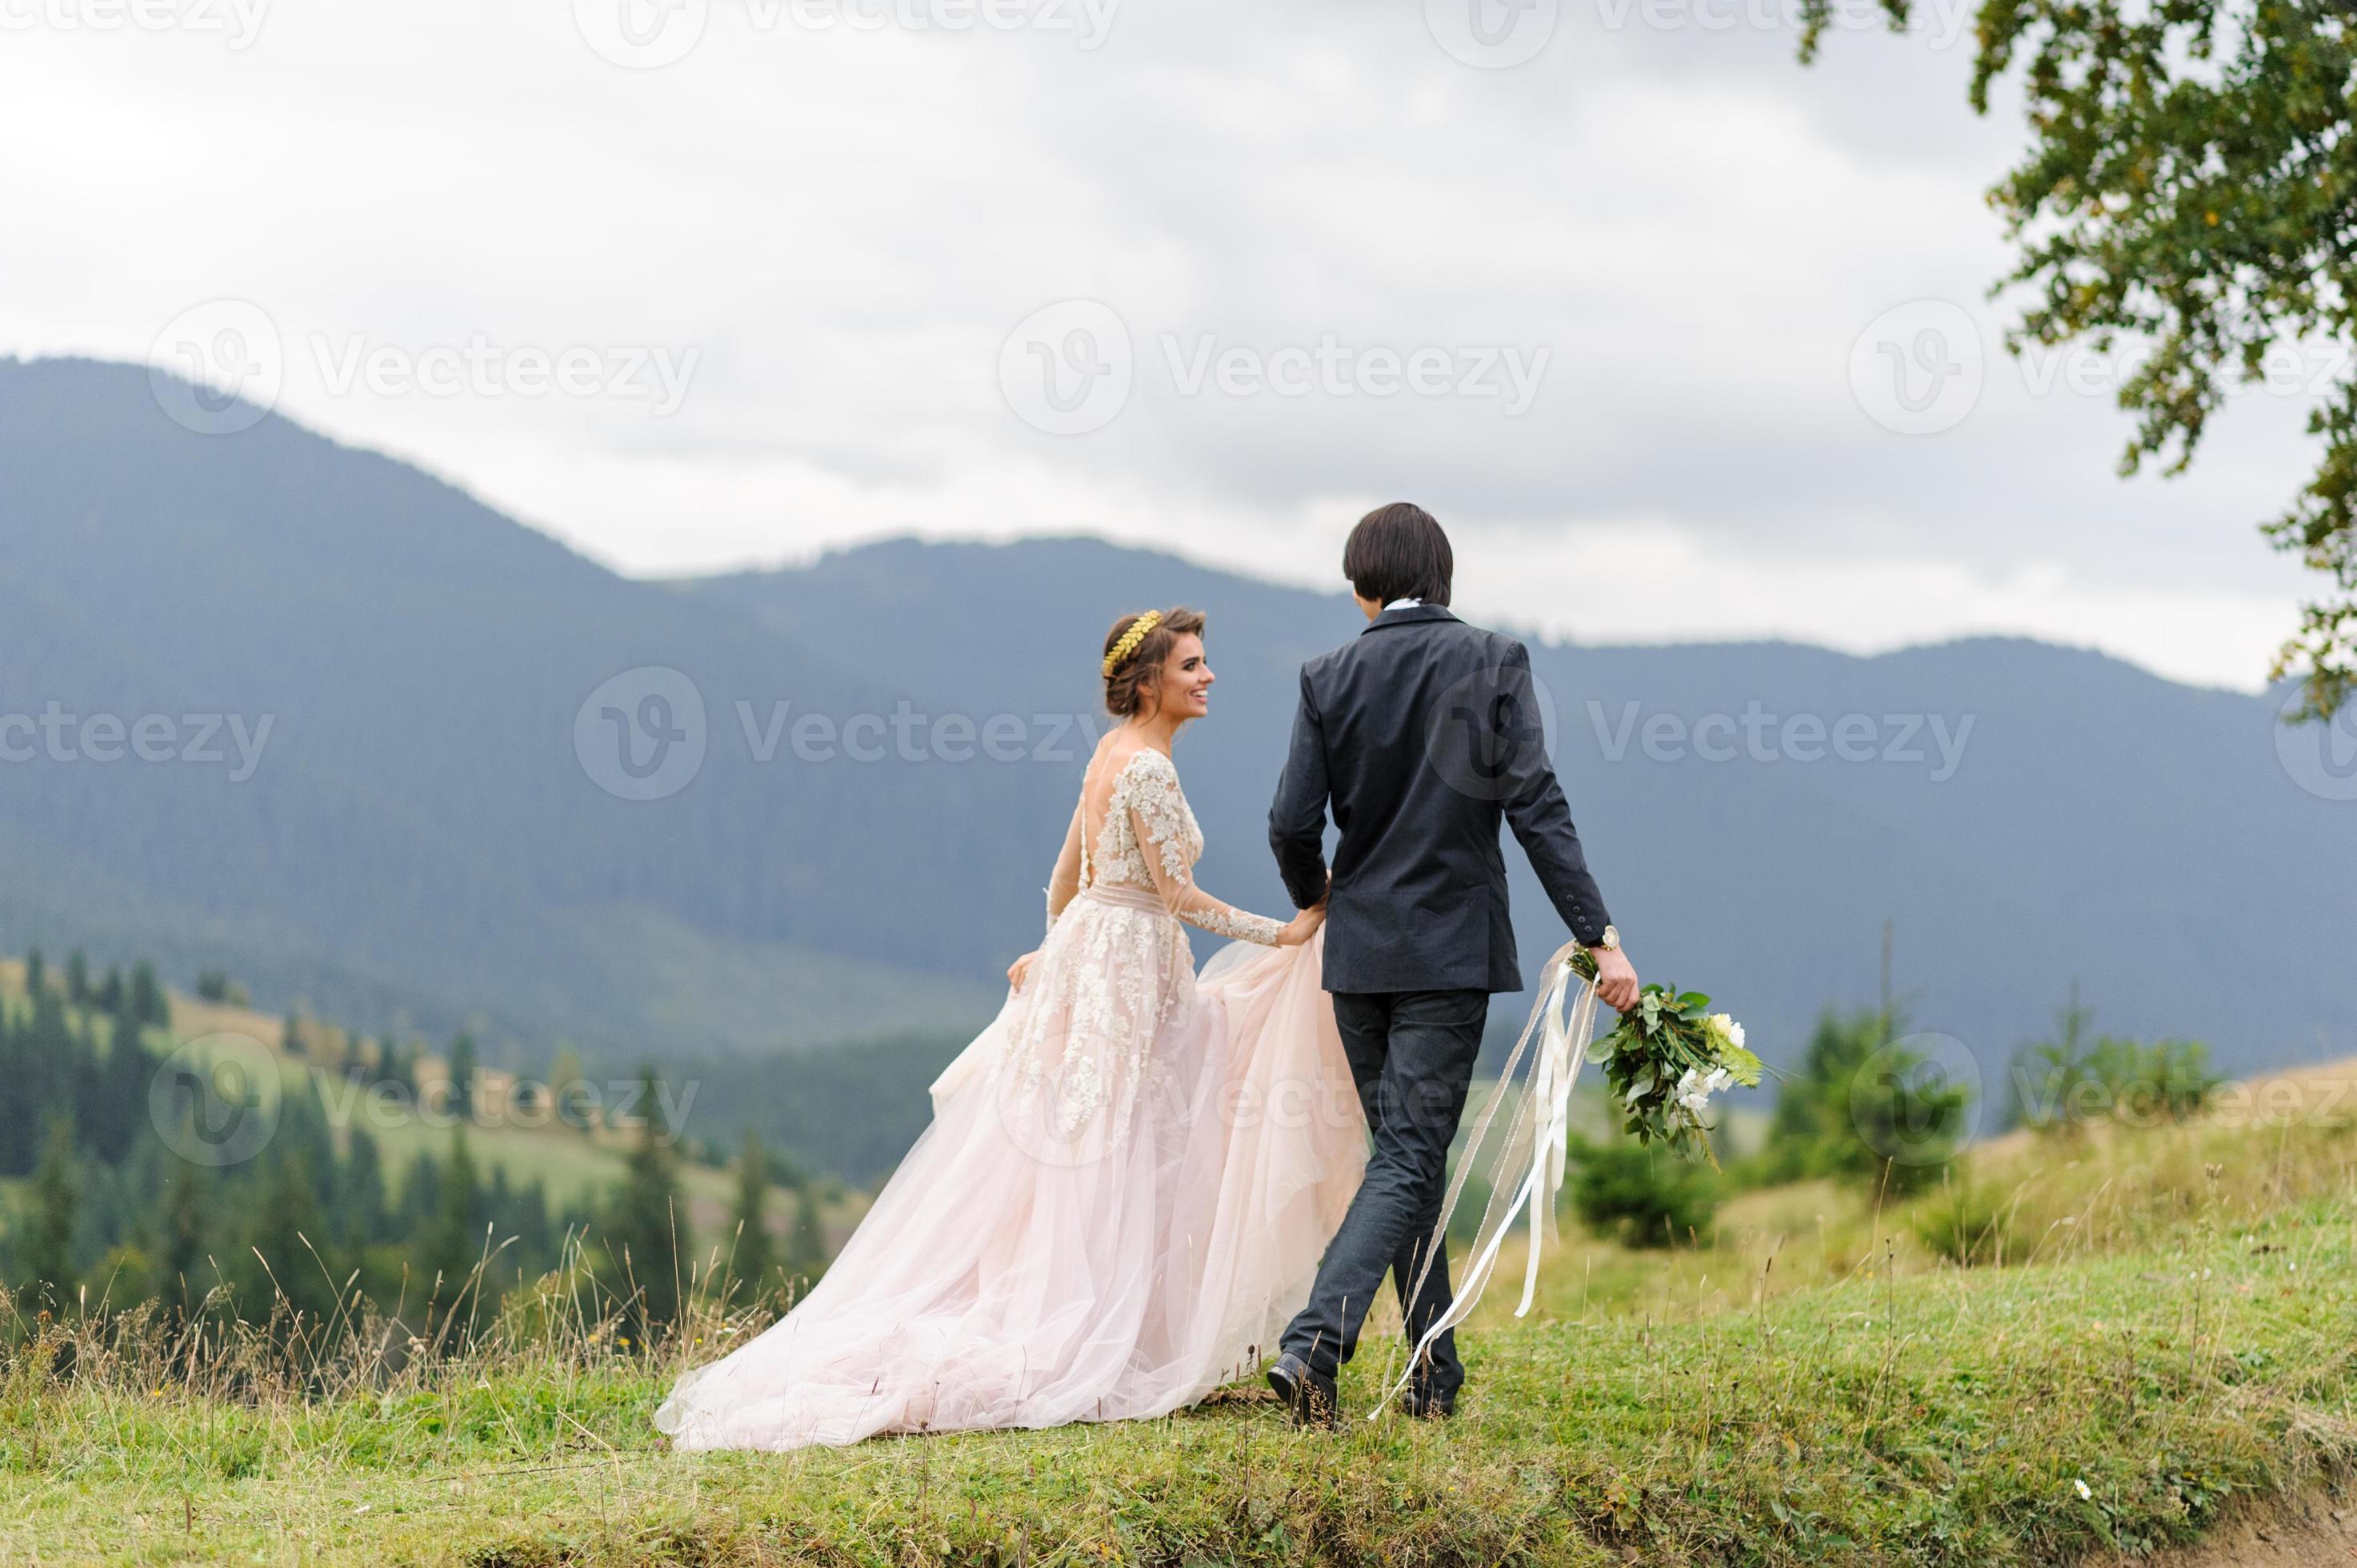 gli sposi camminano per mano sullo sfondo delle montagne. foto del matrimonio.